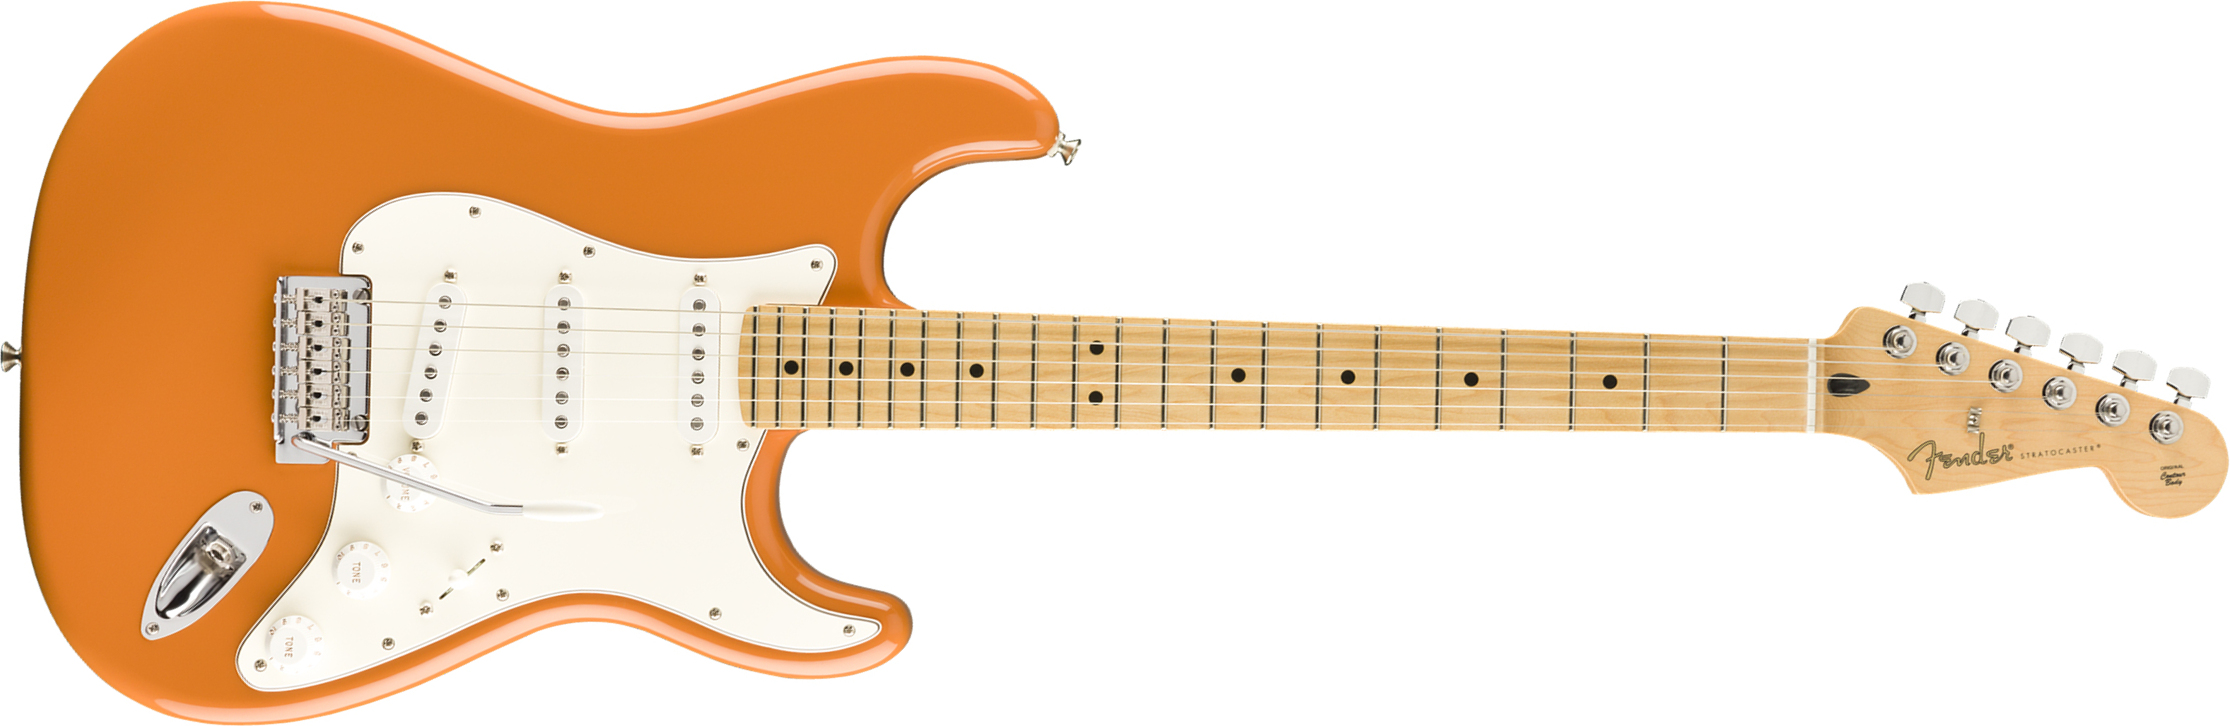 Fender Strat Player Mex Sss Mn - Capri Orange - Elektrische gitaar in Str-vorm - Main picture